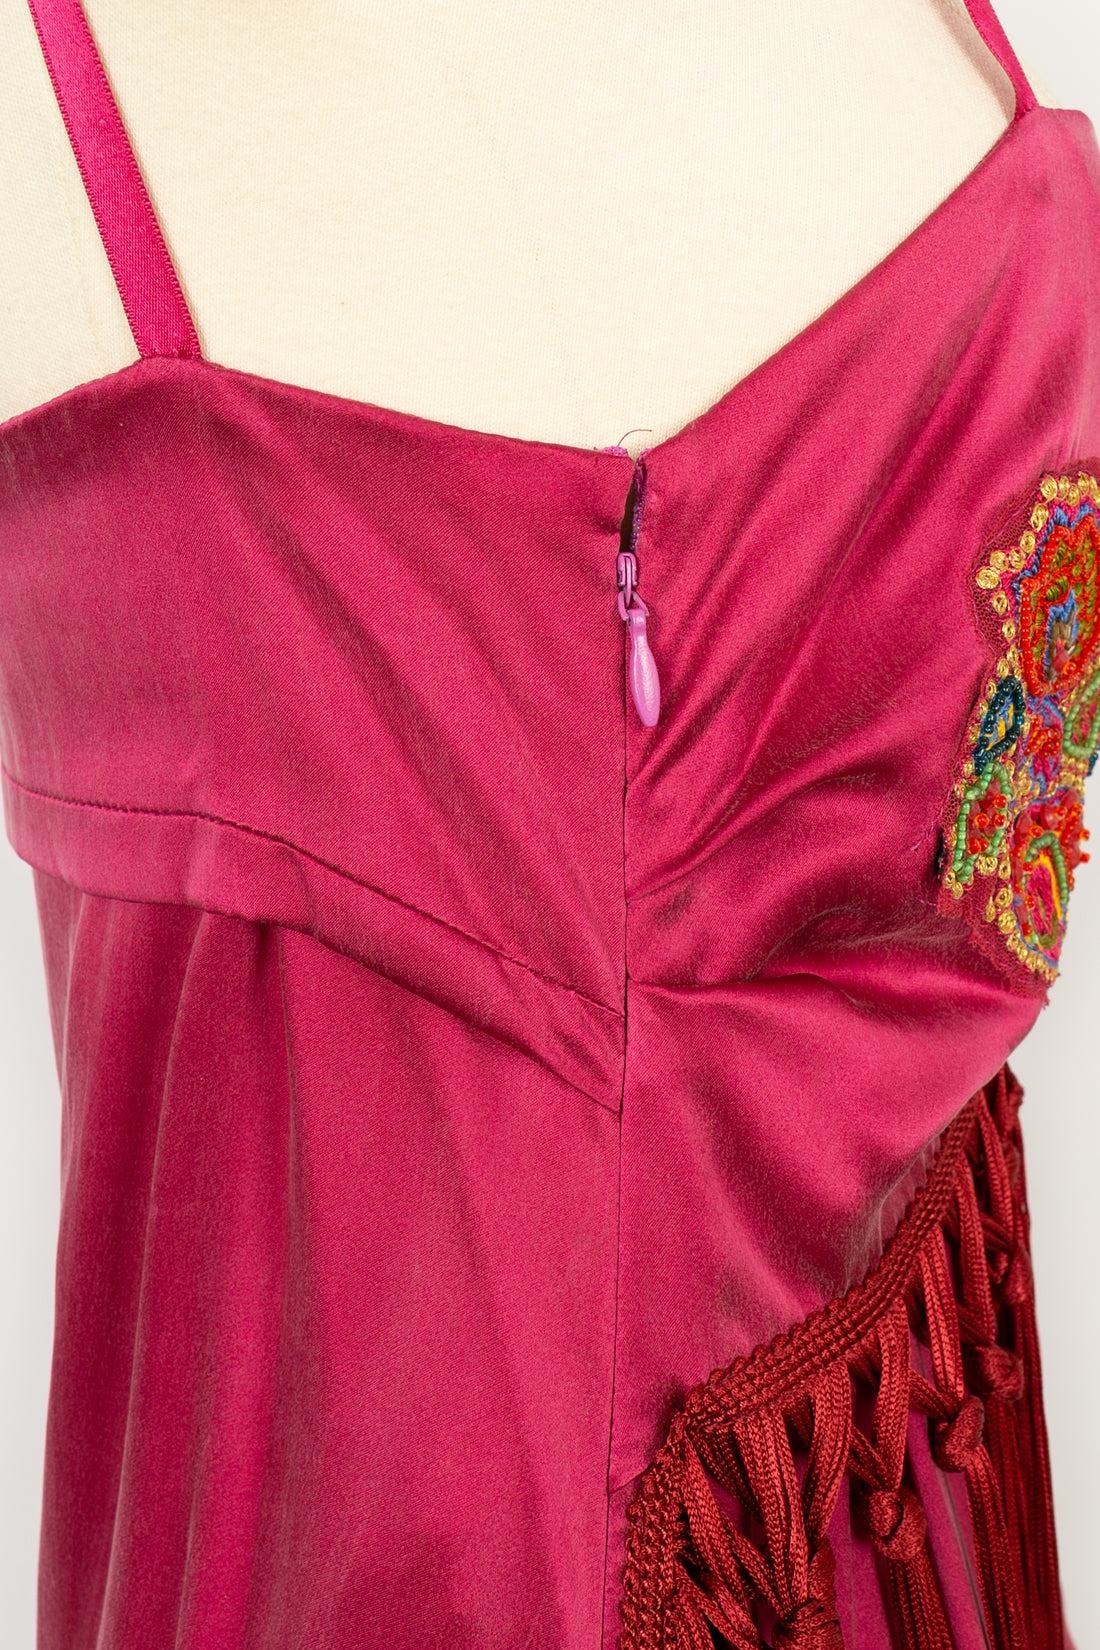 John Galliano Dress in Pink Silk, 2000s 3